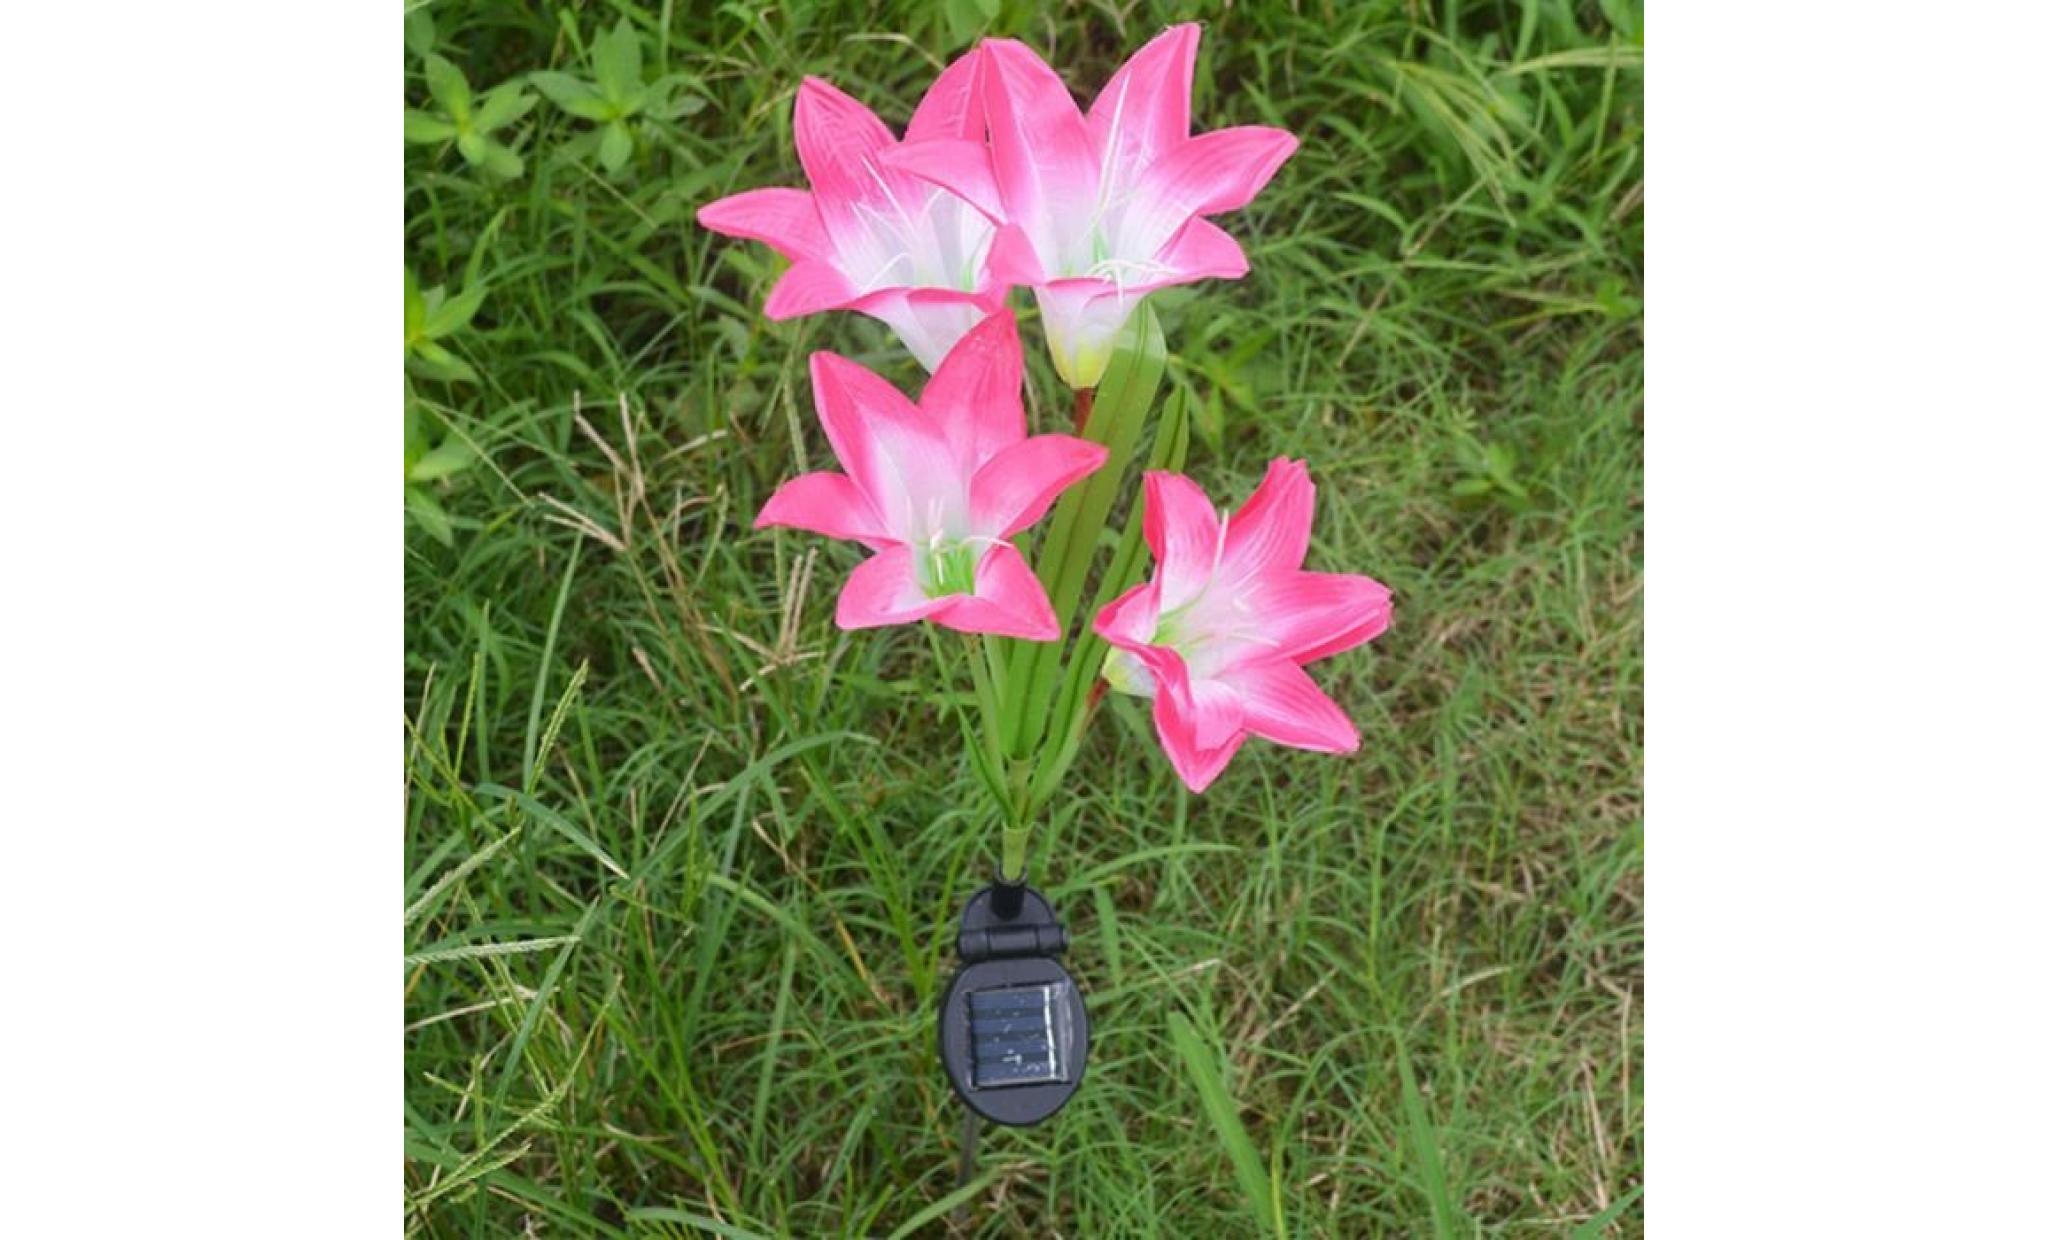 2 pièces lily flower garden powered solaire stake lumières fleurs artificielles led li411@ pas cher